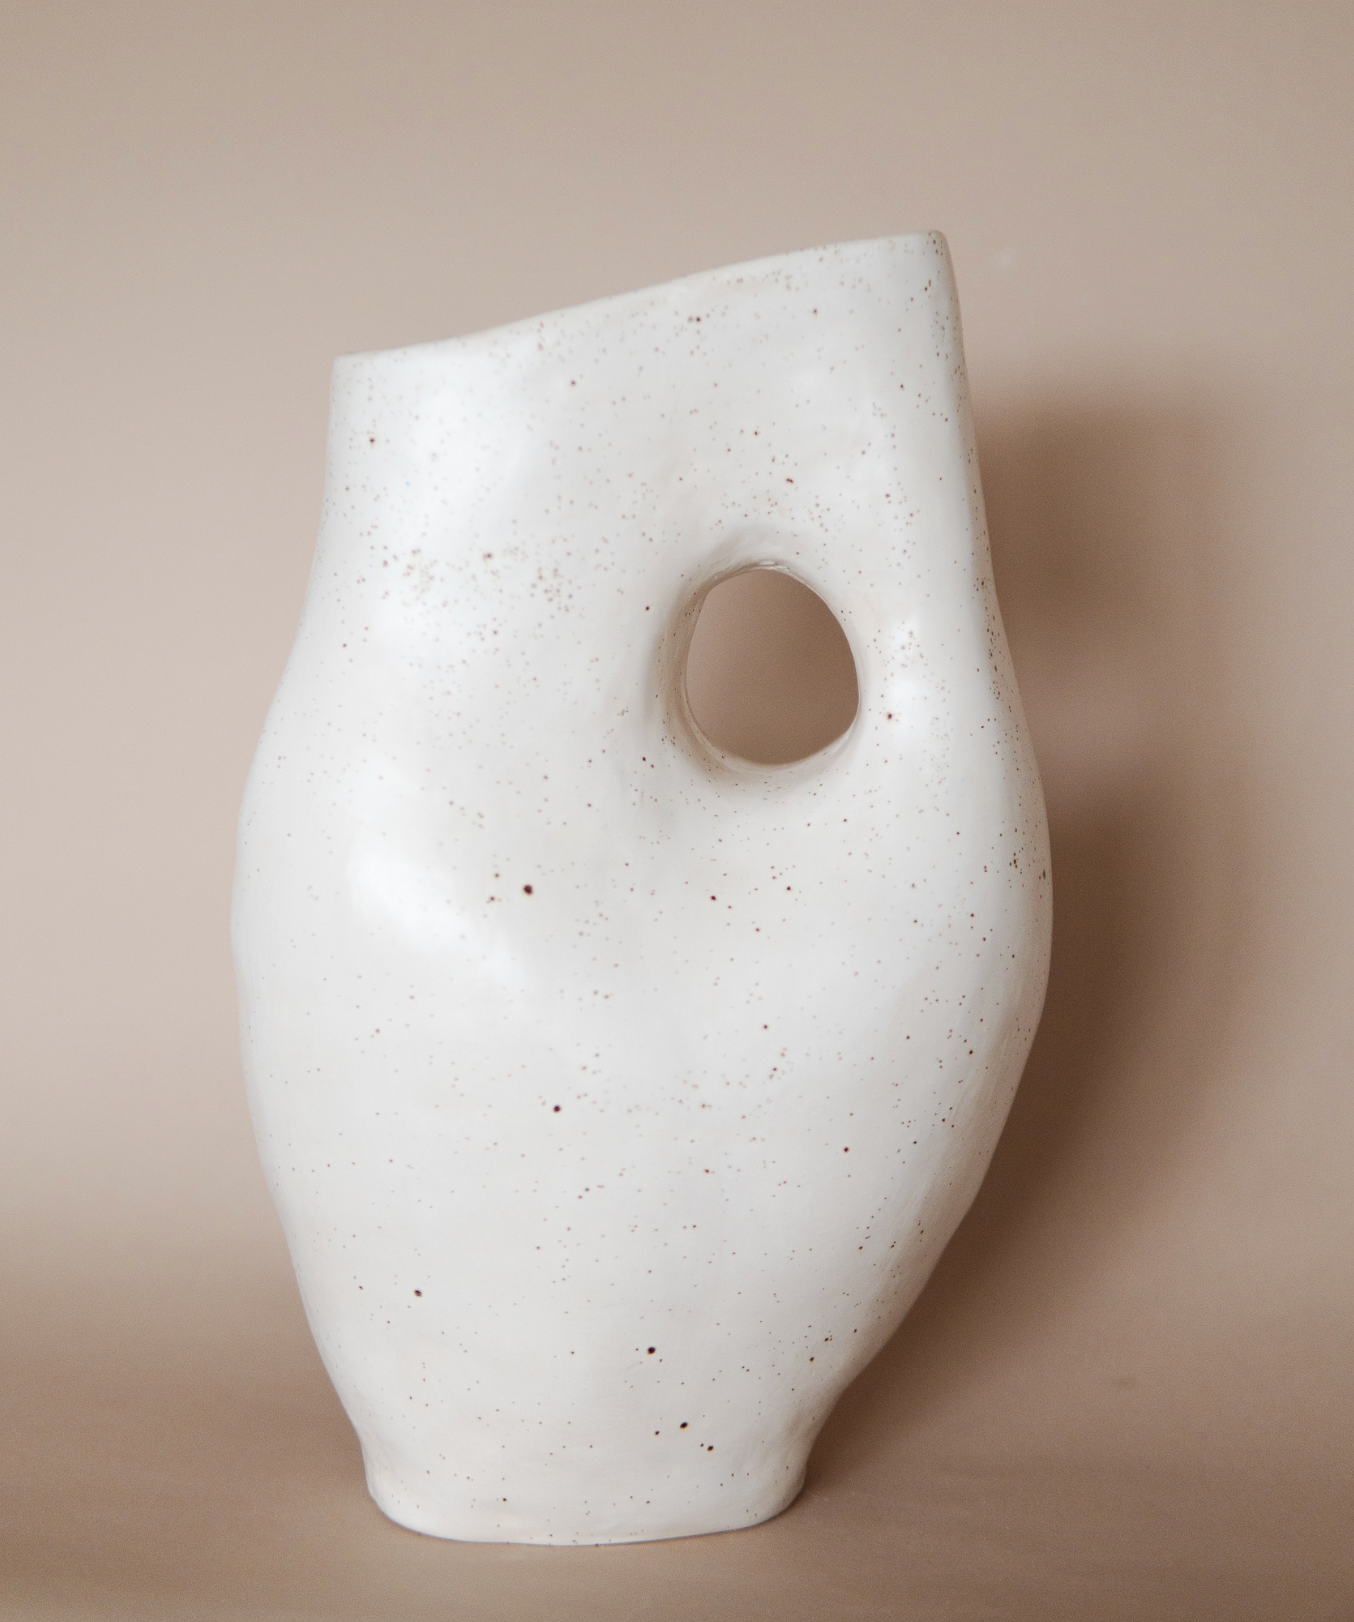 A's Vase #1